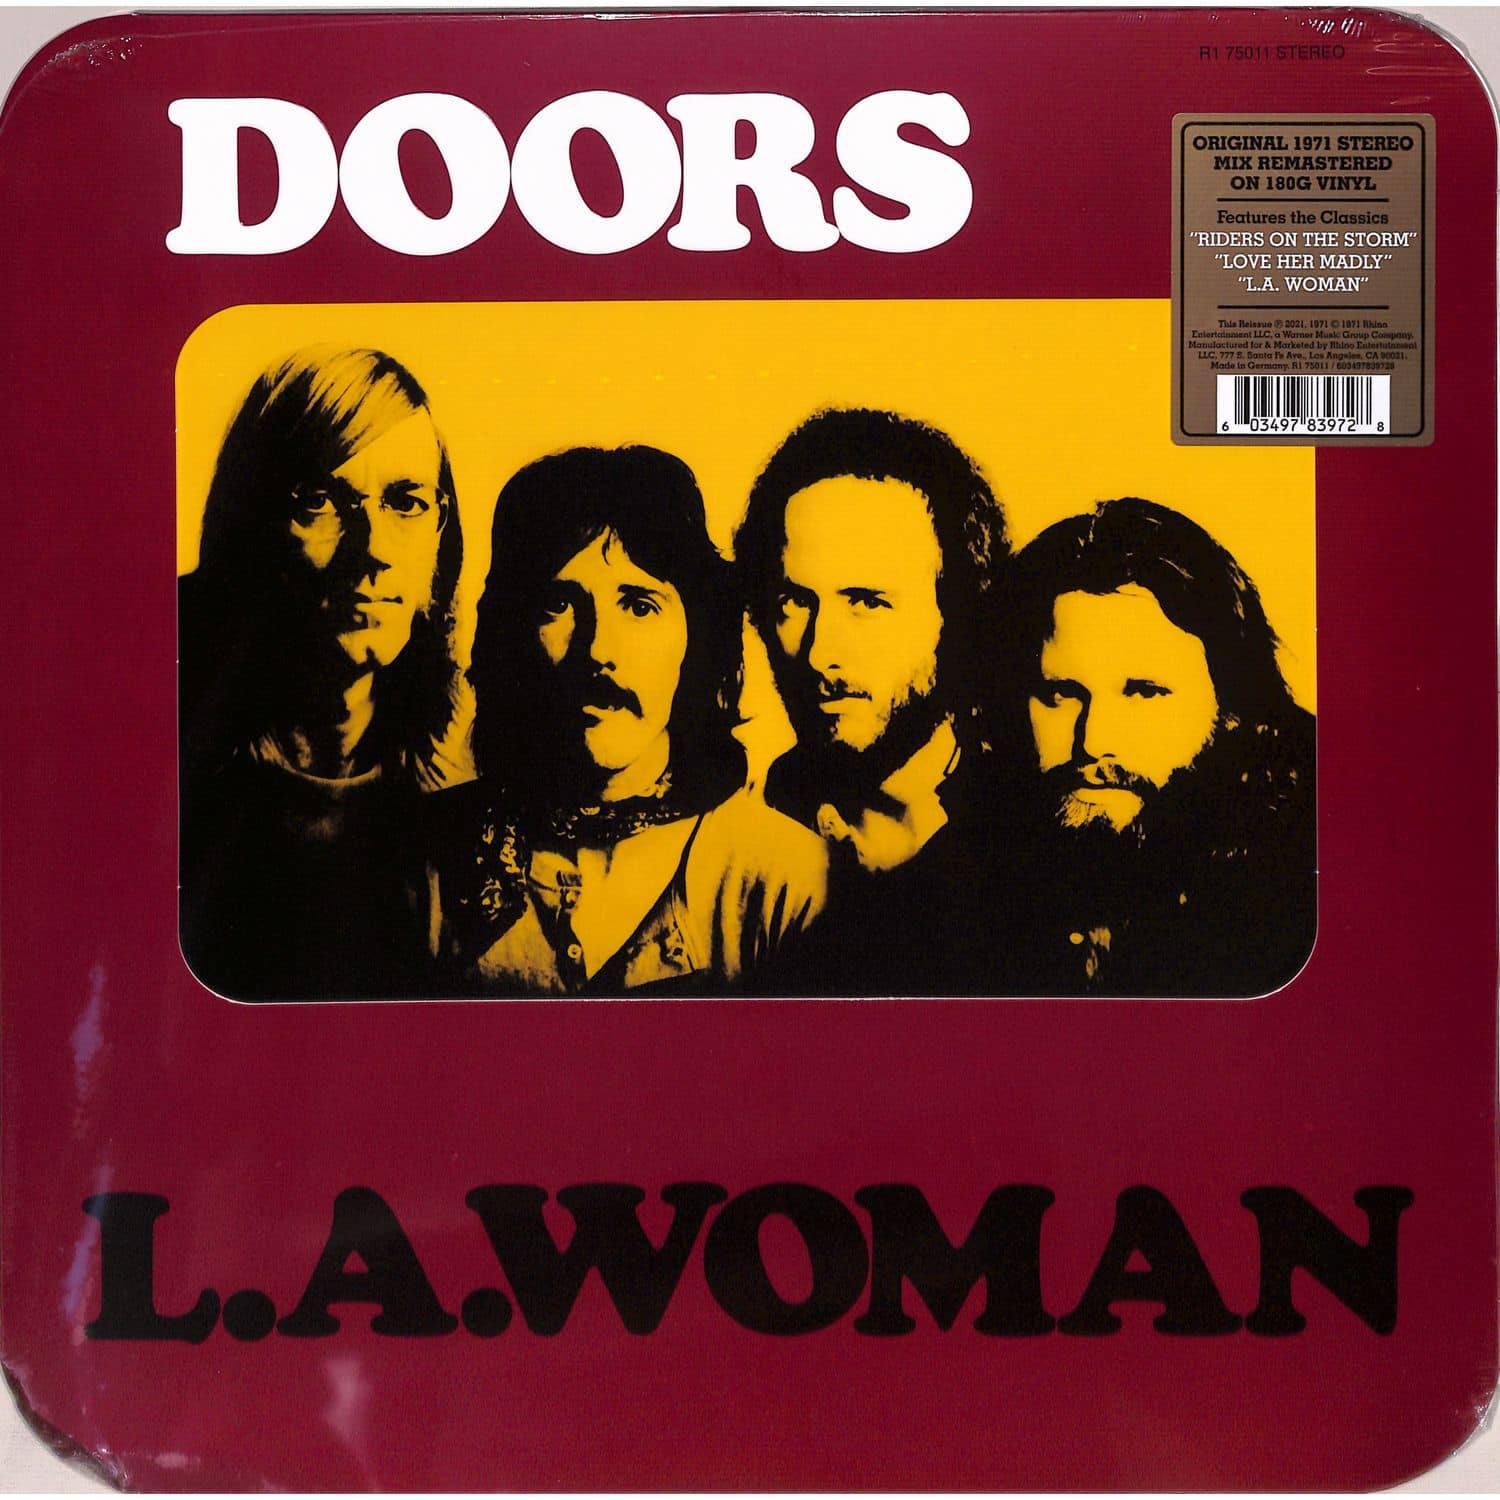 The Doors - L.A.WOMAN 